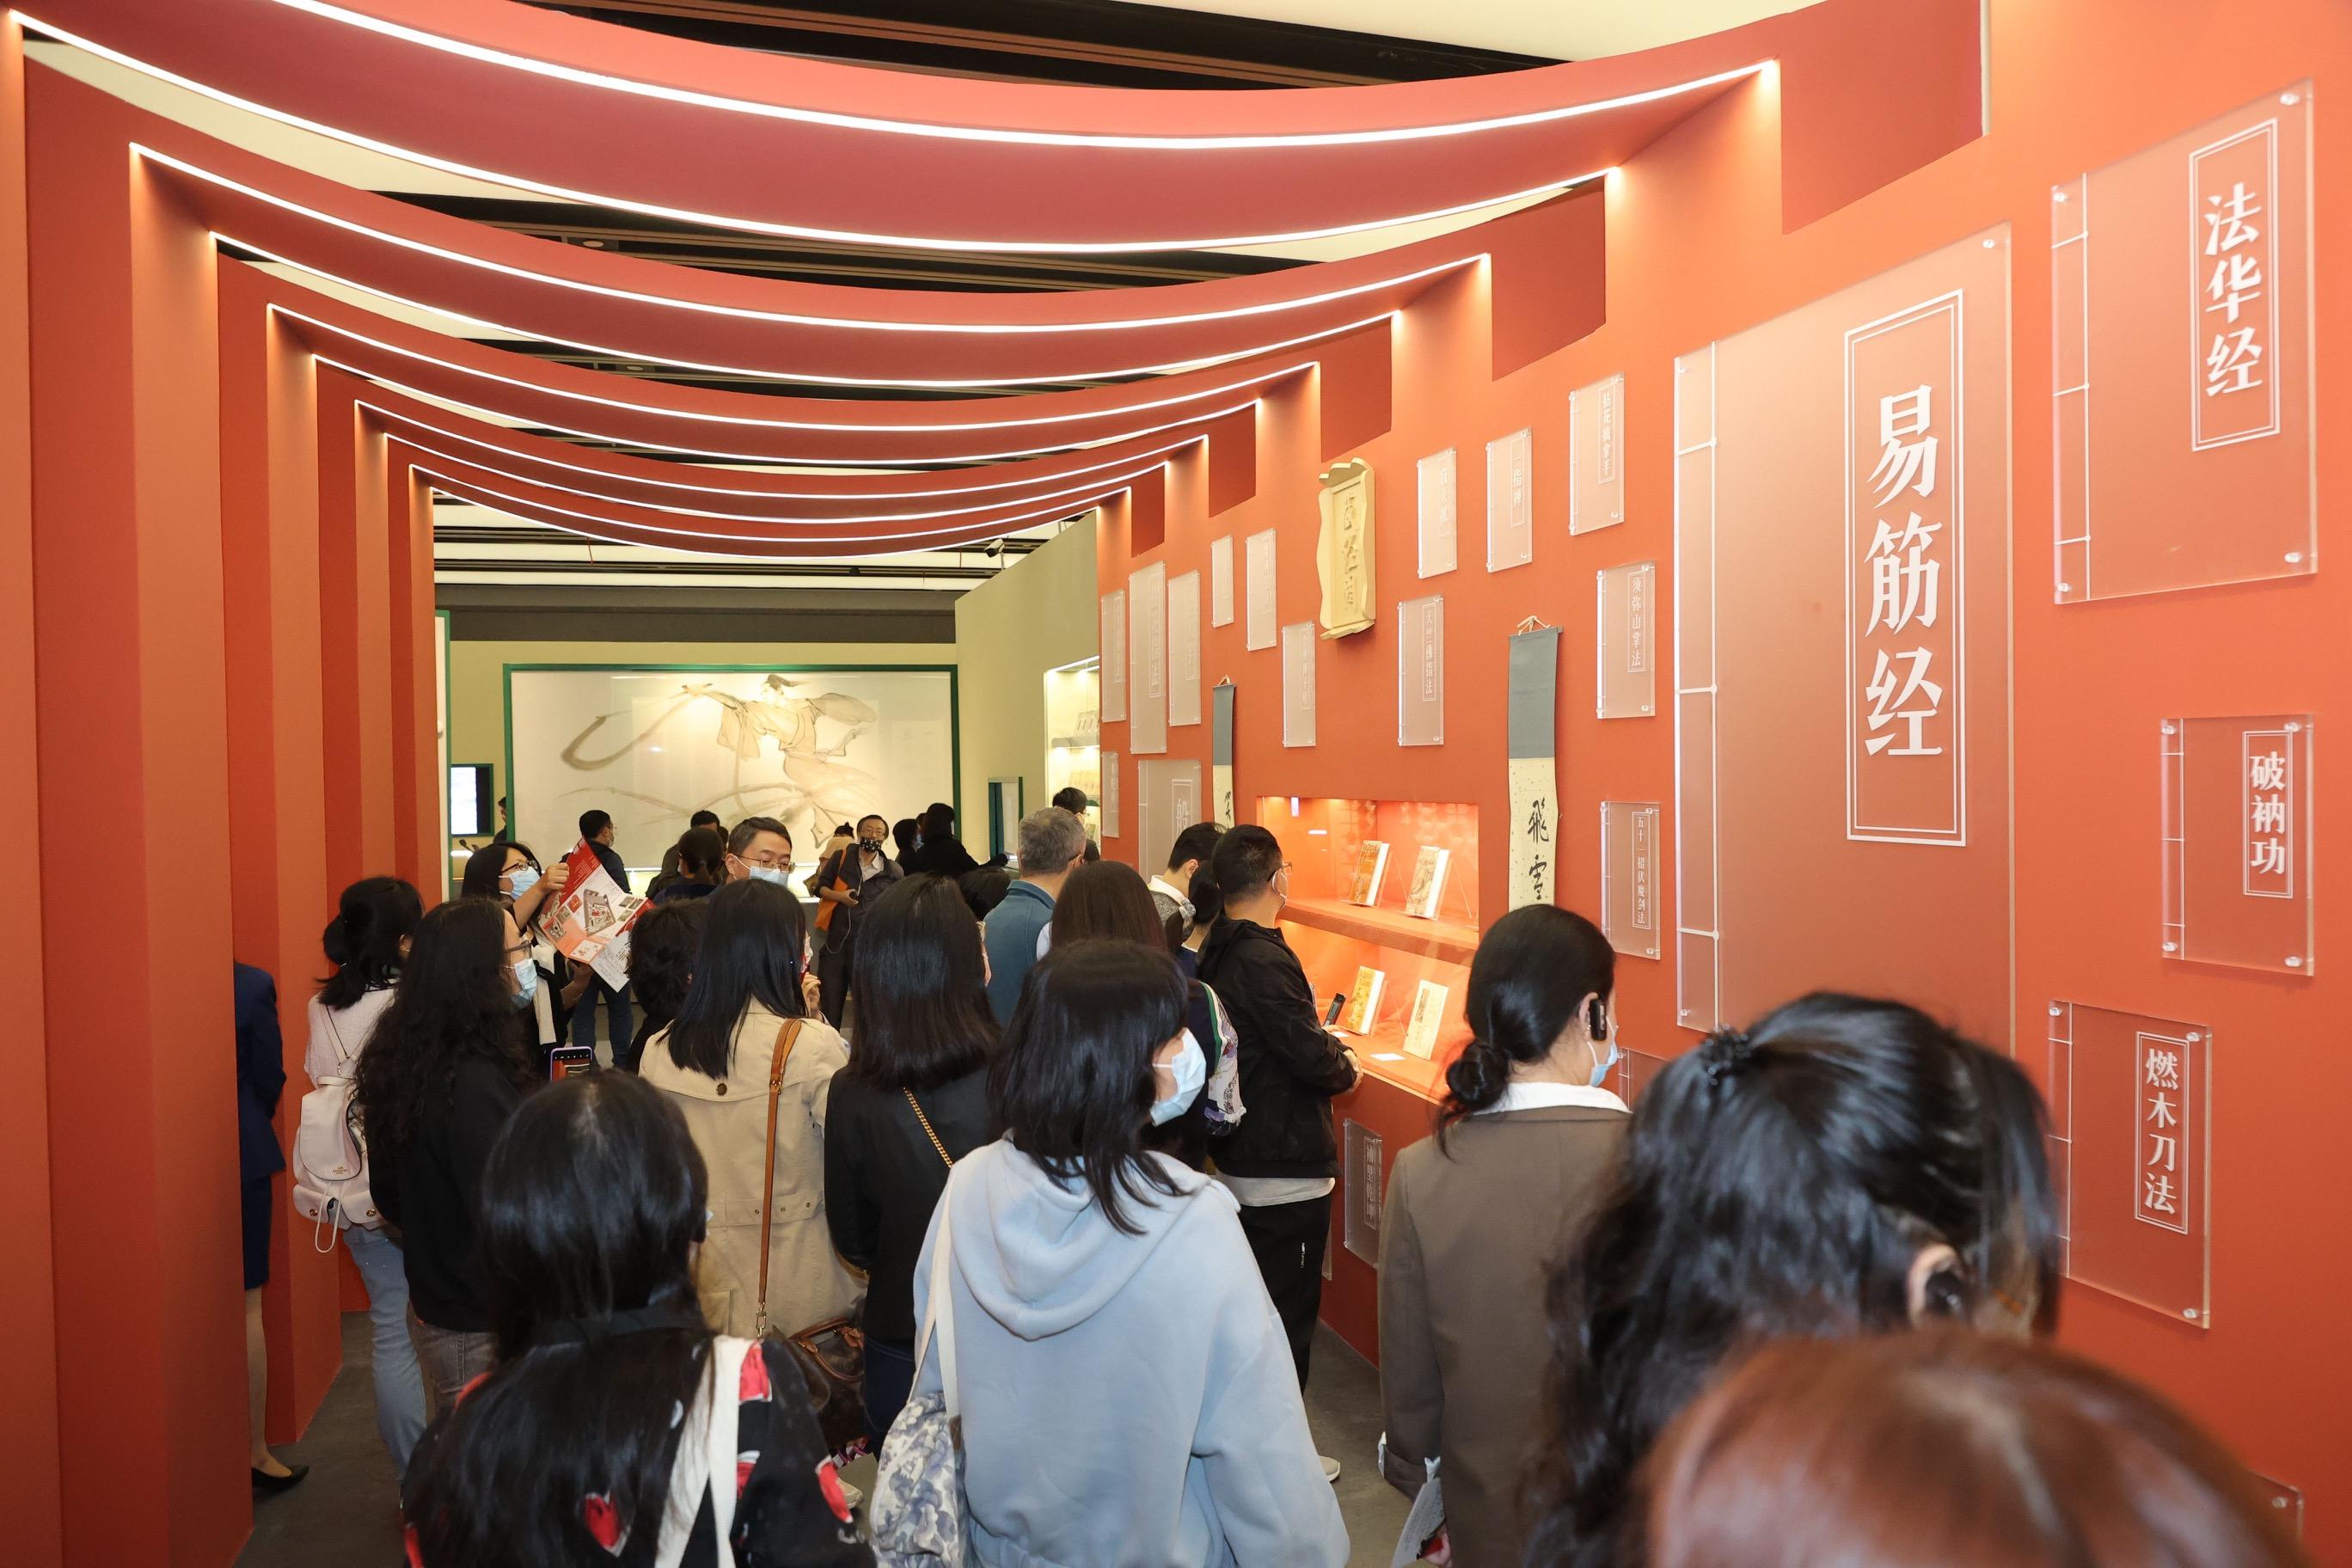 以著名報人和作家查良鏞博士（筆名金庸）為主題的展覽「金庸展—上海站」今日（十二月十一日）在上海圖書館東館圓滿閉幕。圖示觀眾參觀展覽的情況。